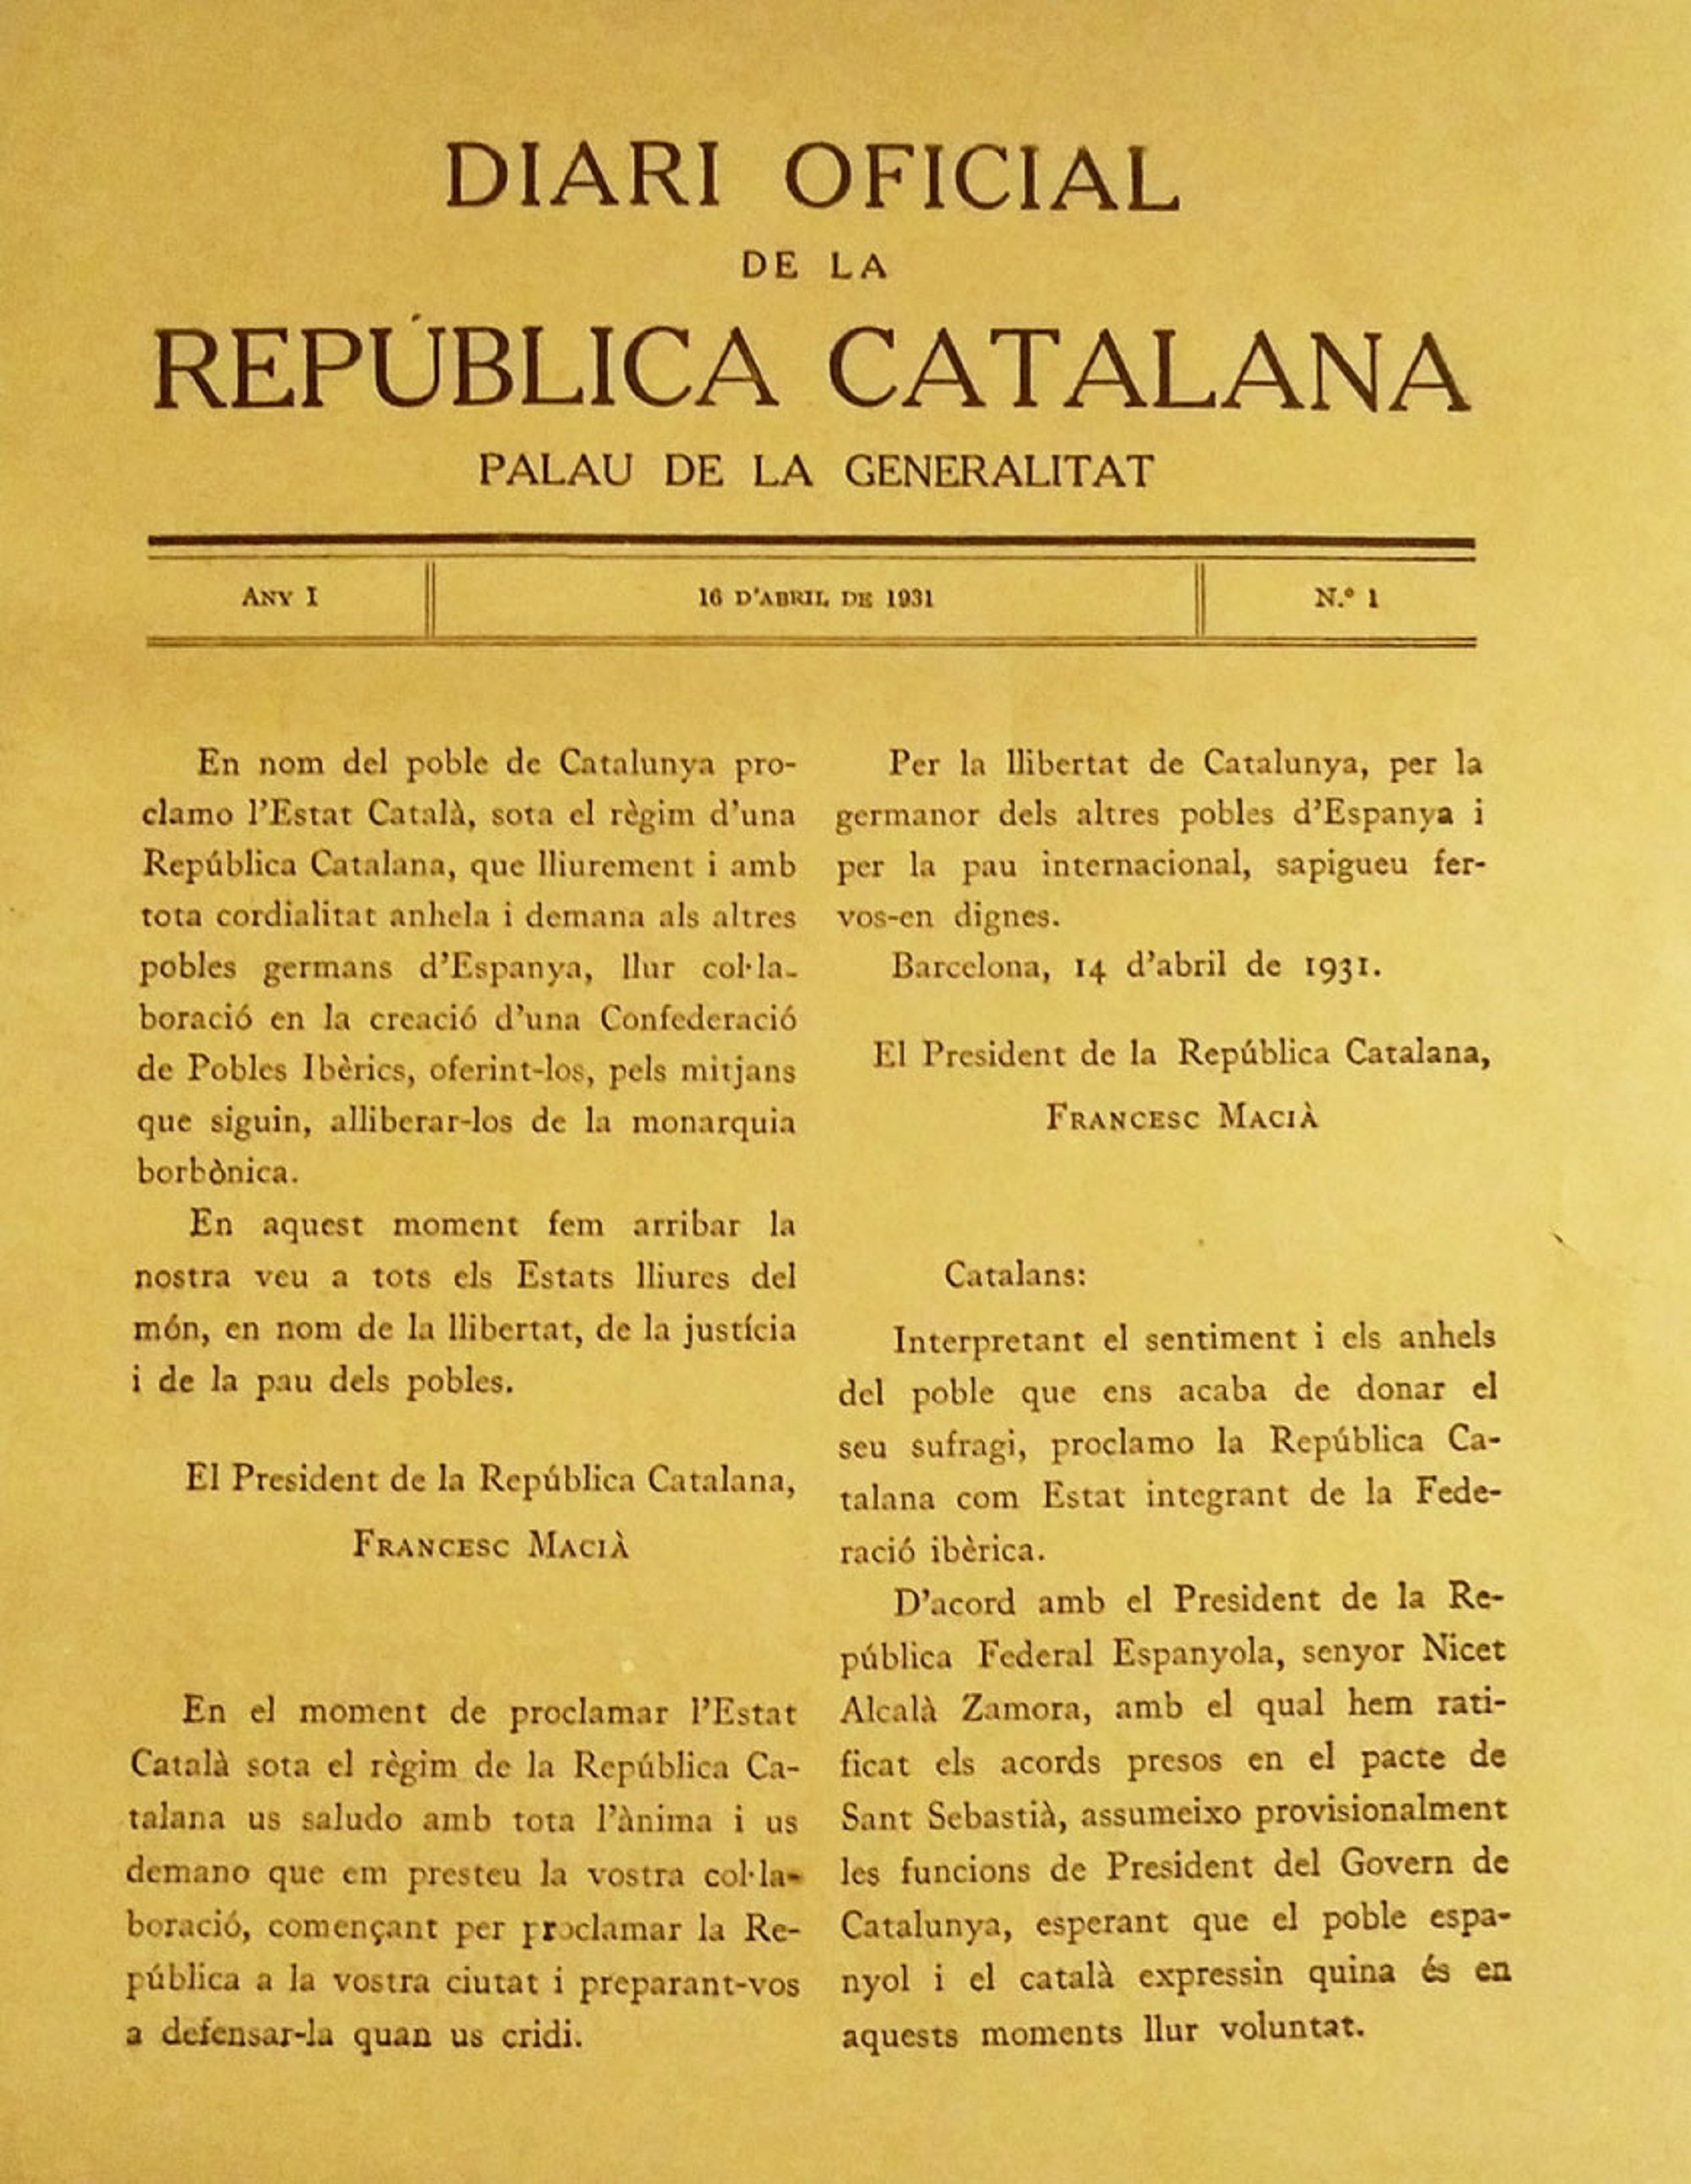 Aquest és l'únic diari oficial existent de la República Catalana